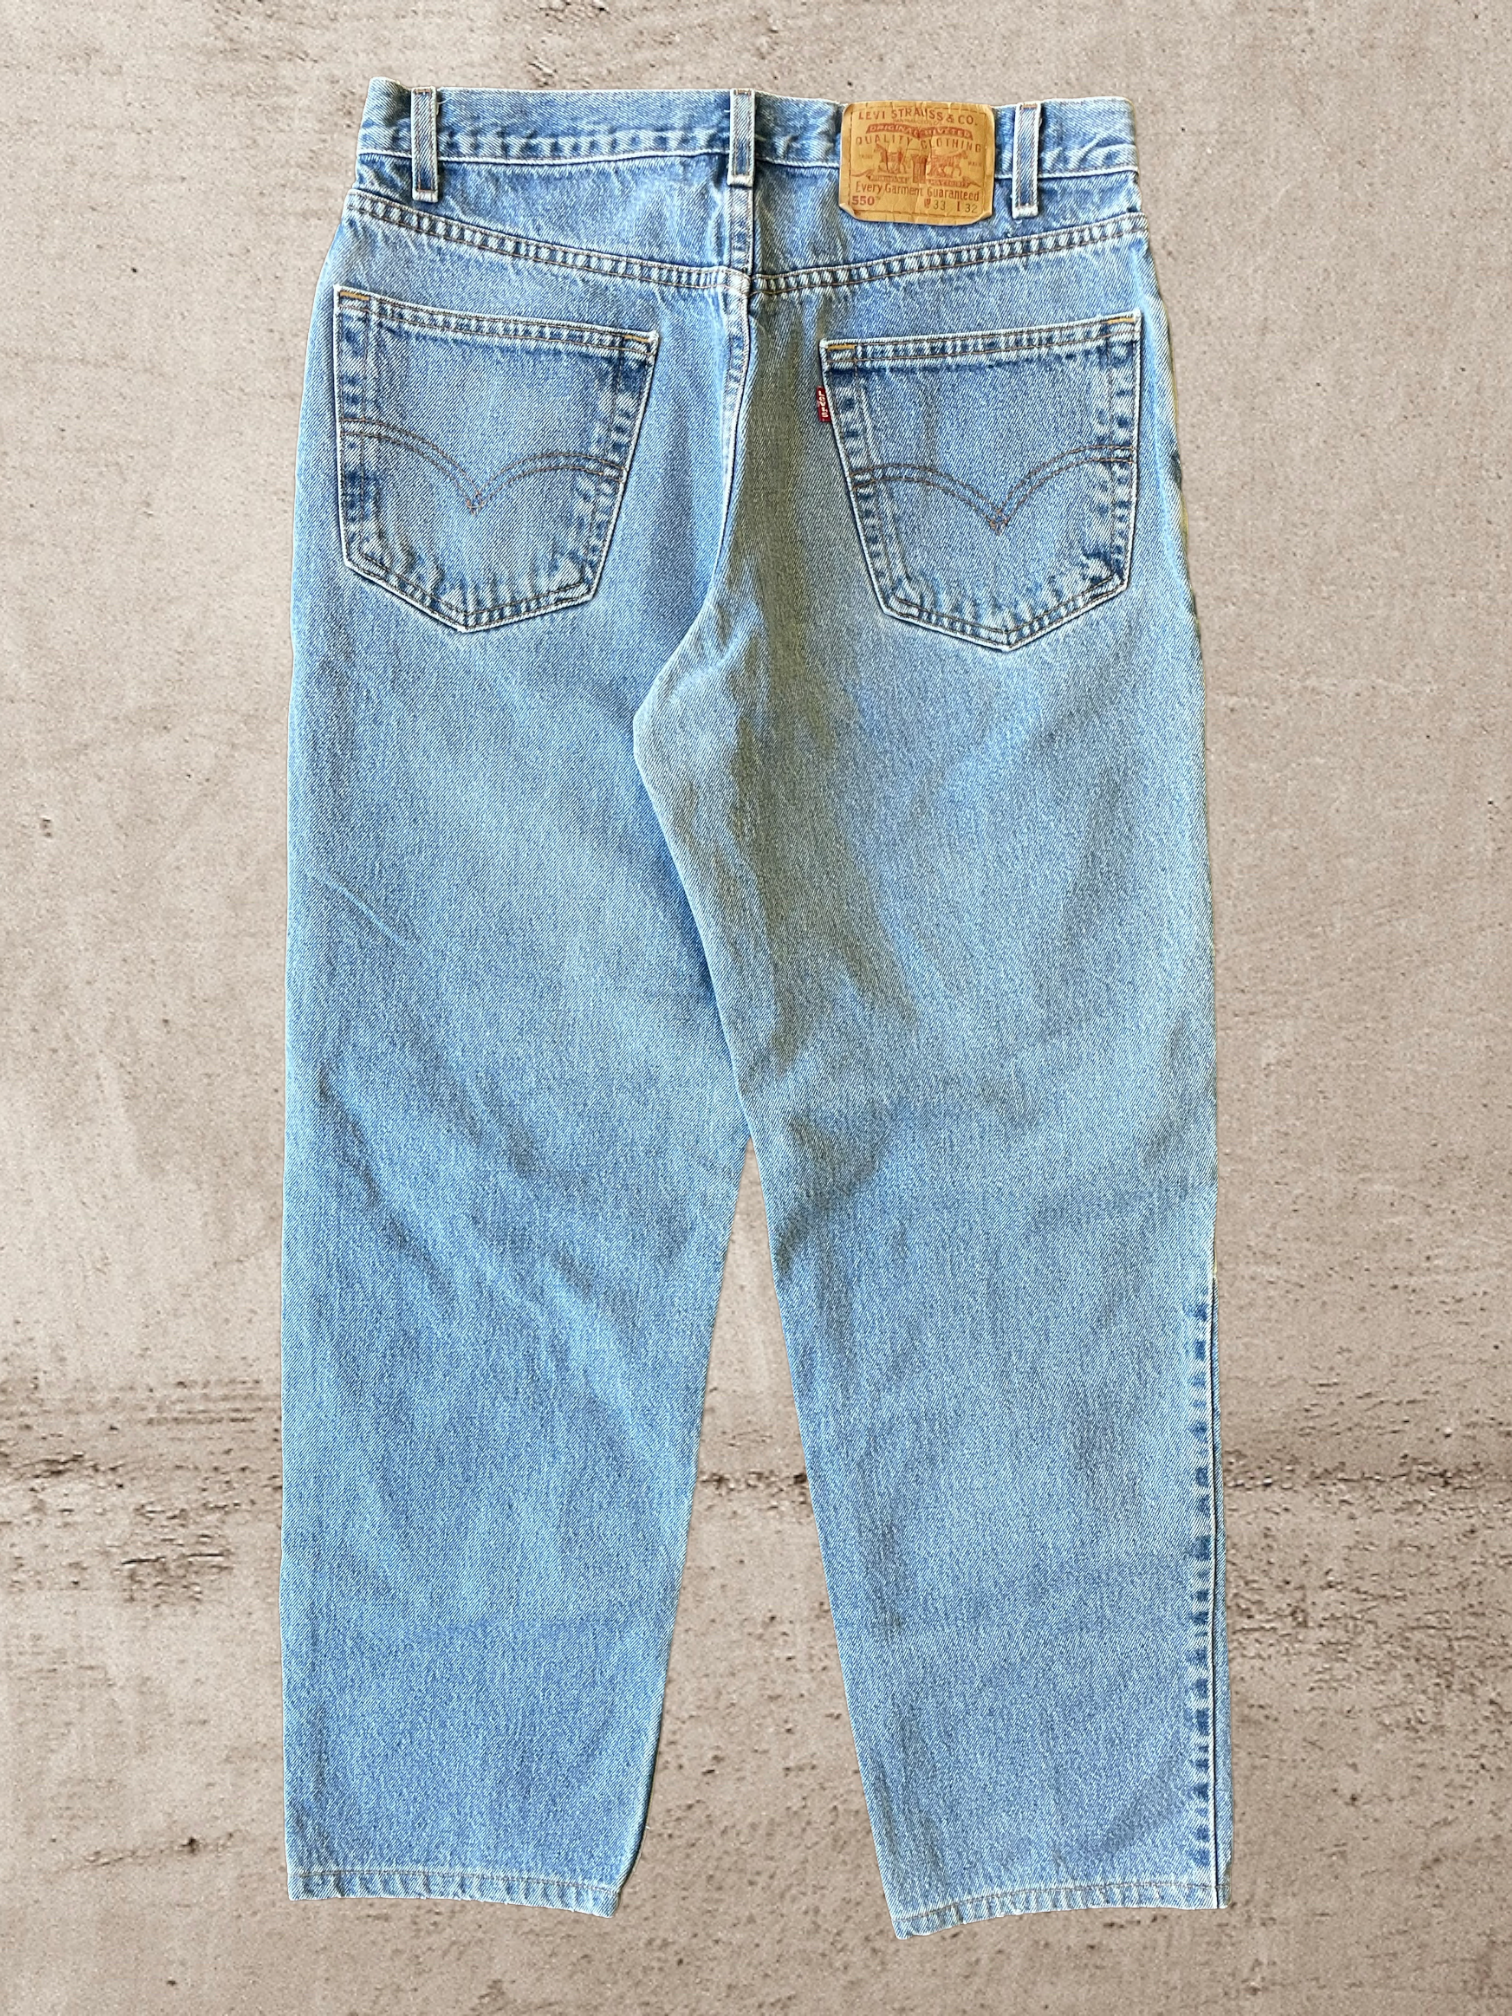 90s Levi 550 Light Wash Jeans - 32x30